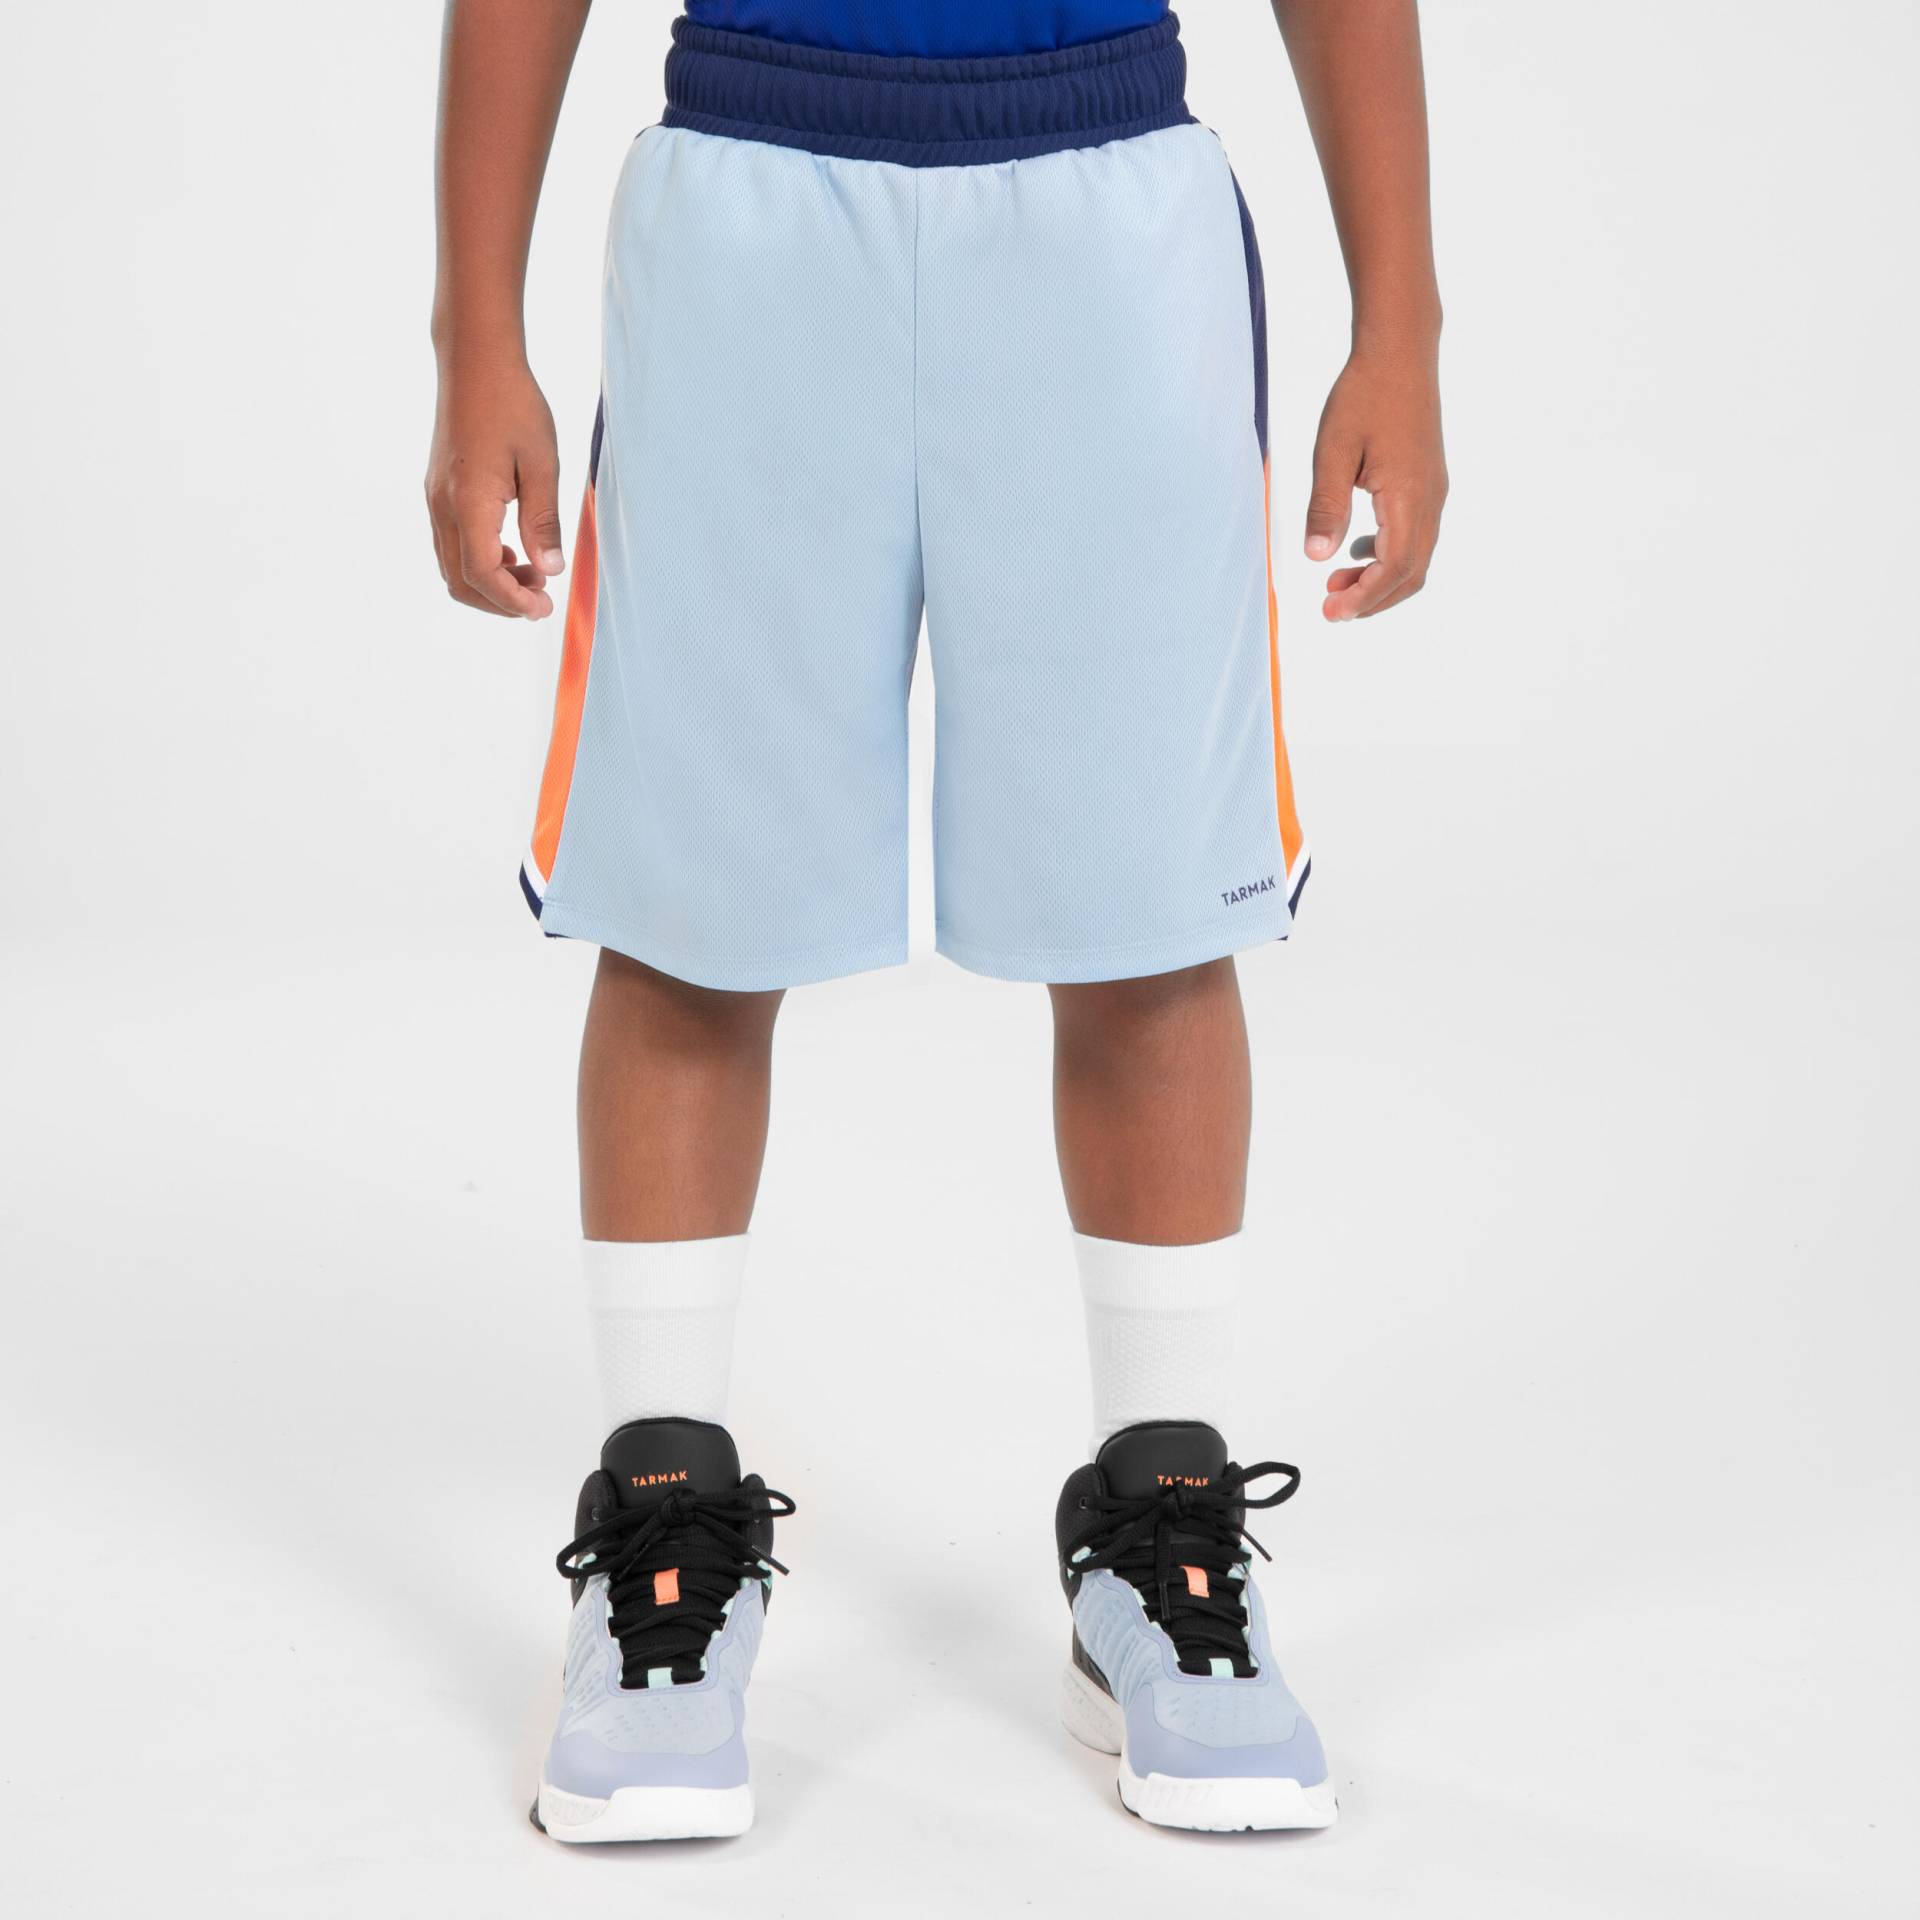 Kinder wendbar Basketball Shorts - SH500R hellblau/marineblau von TARMAK